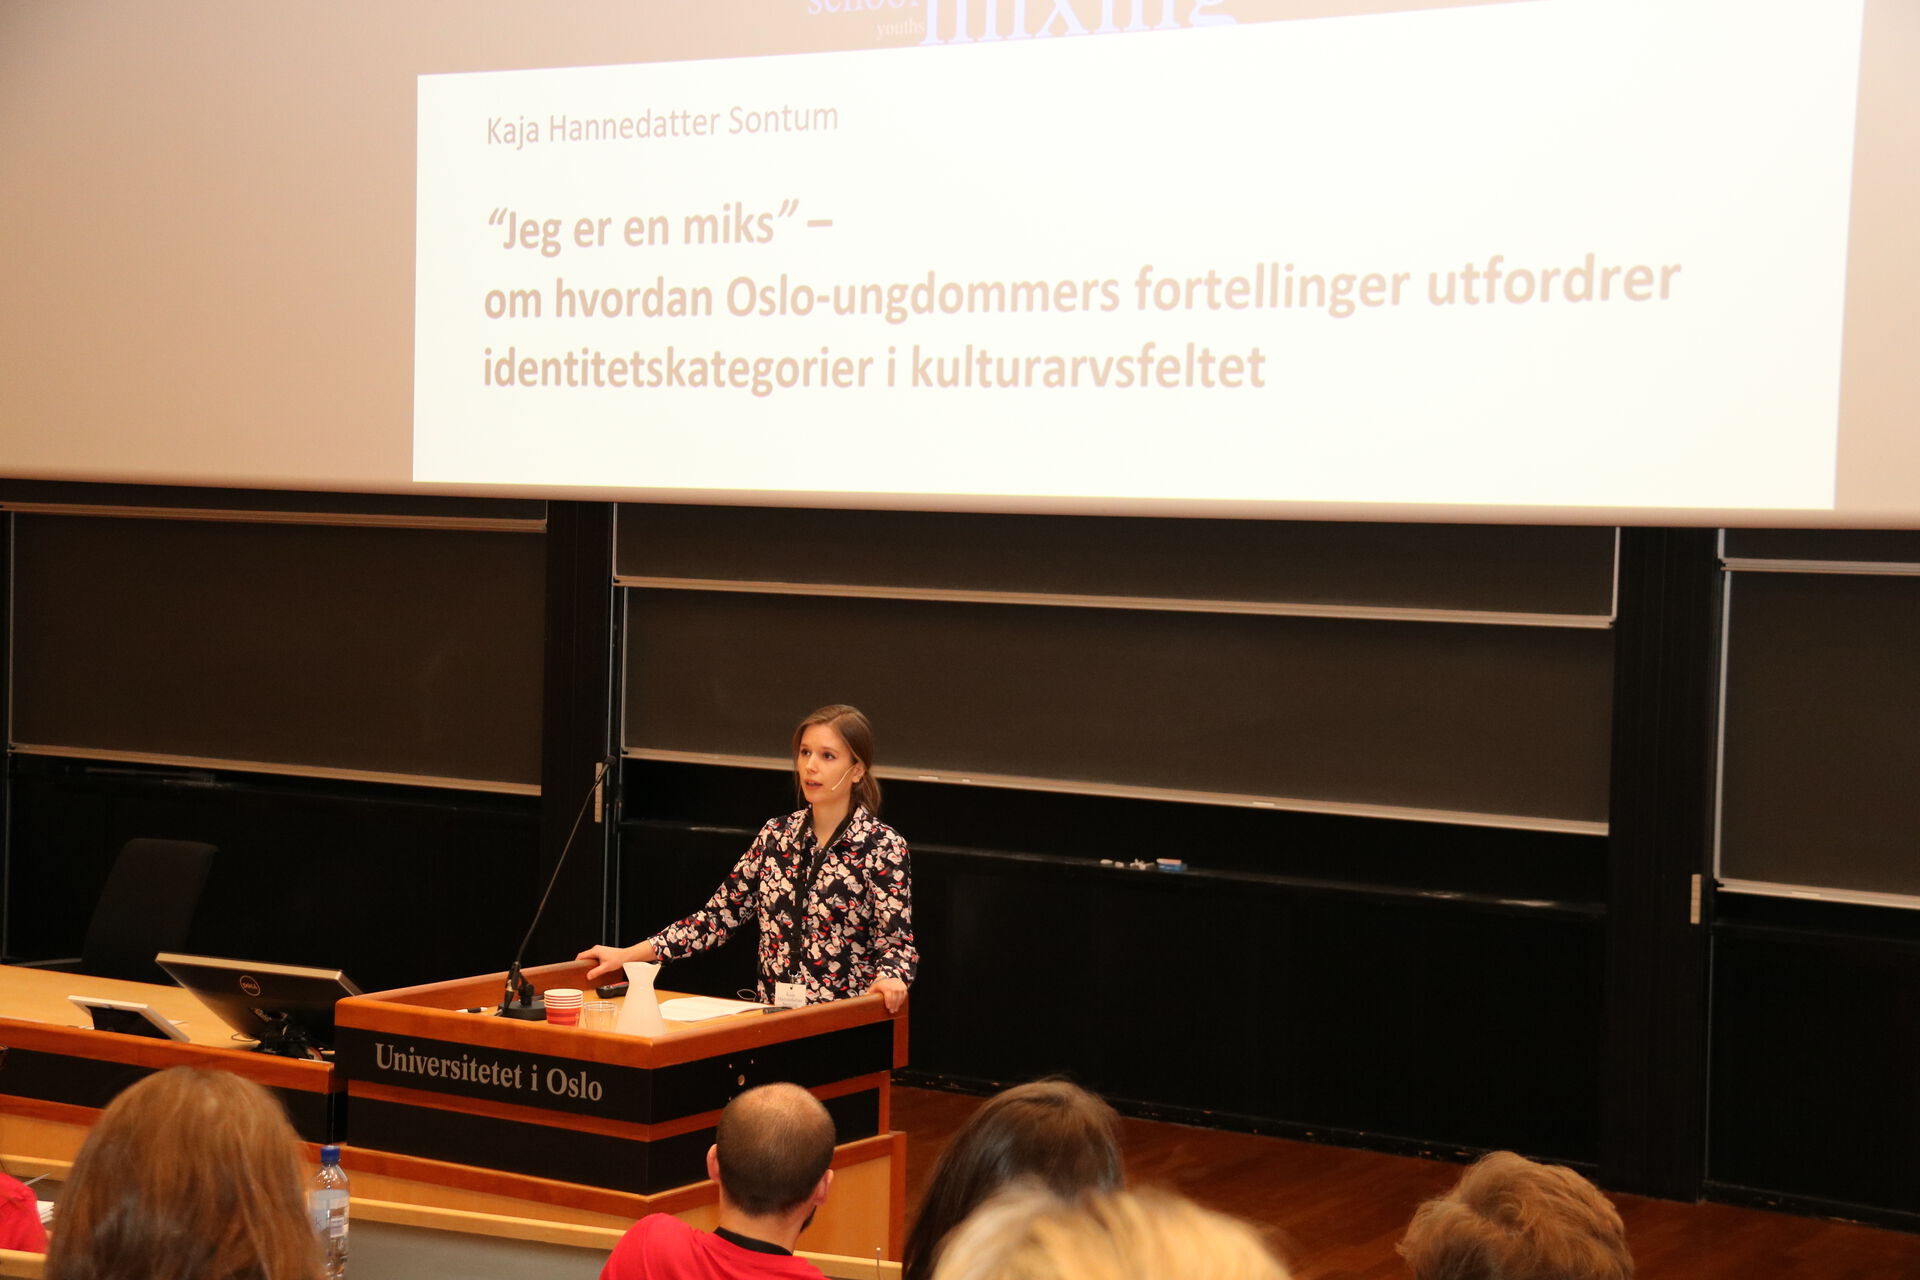 Kvinne i blomstrete skjorte bak en talerstol i en forelesningssal med påskriften "Universitetet i Oslo." I bakgrunnen en stor skjerm med teksten "Jeg er en miks" - om hvordan Oslo-ungdommers fortellinger utfordrer identitetskategorier i kulturarvsfeltet.